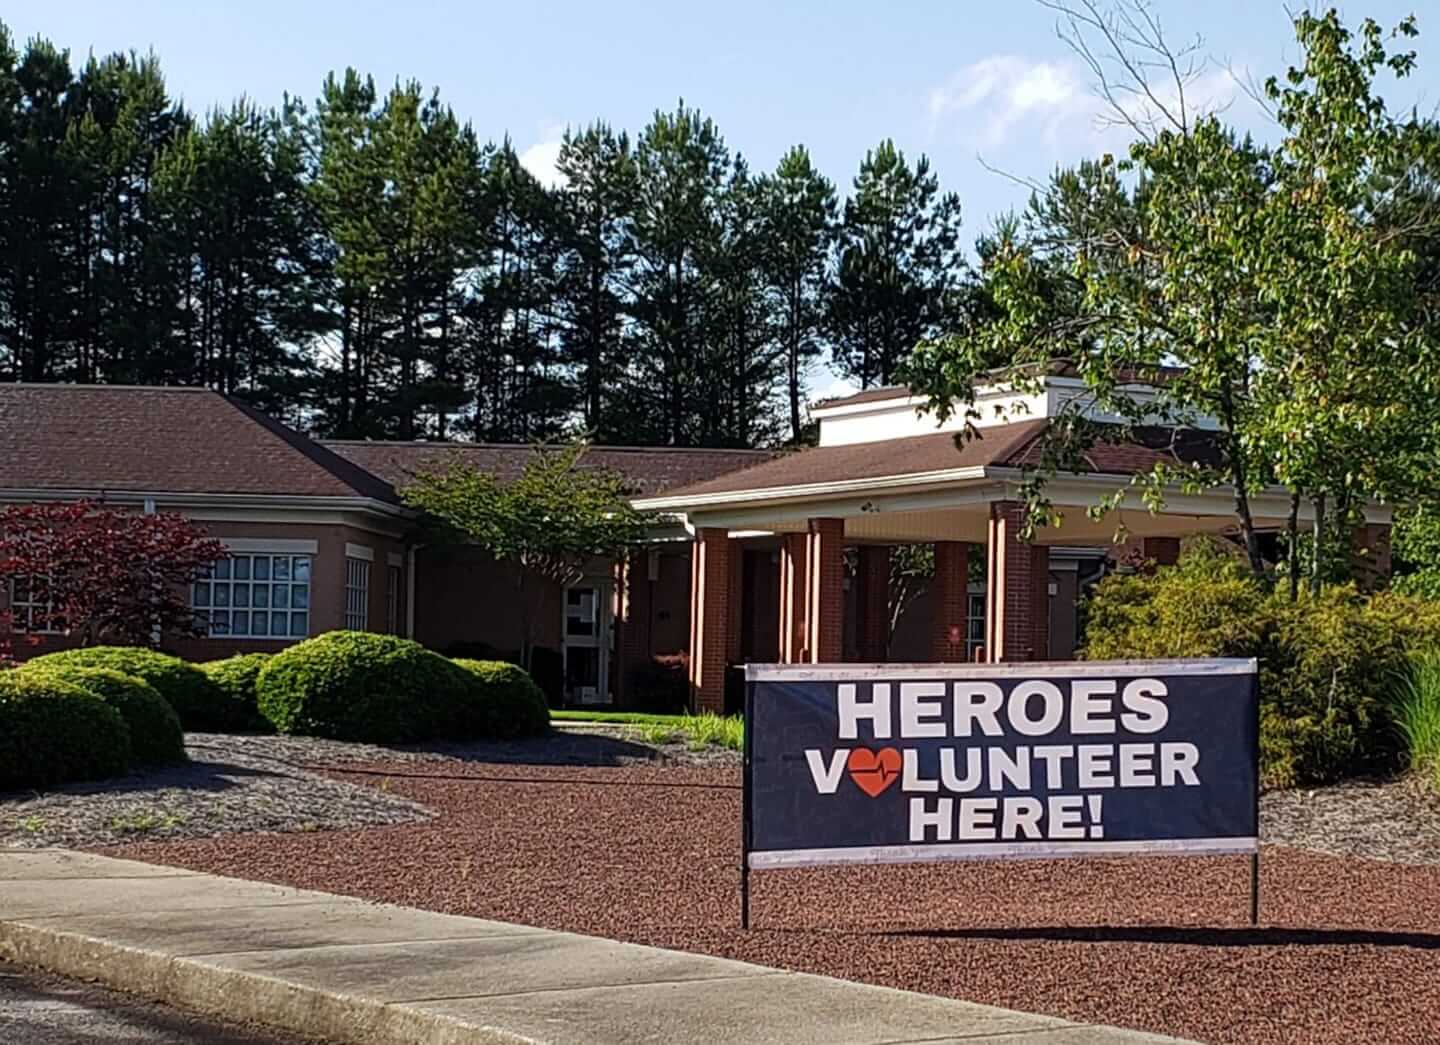 heroes volunteer here sign